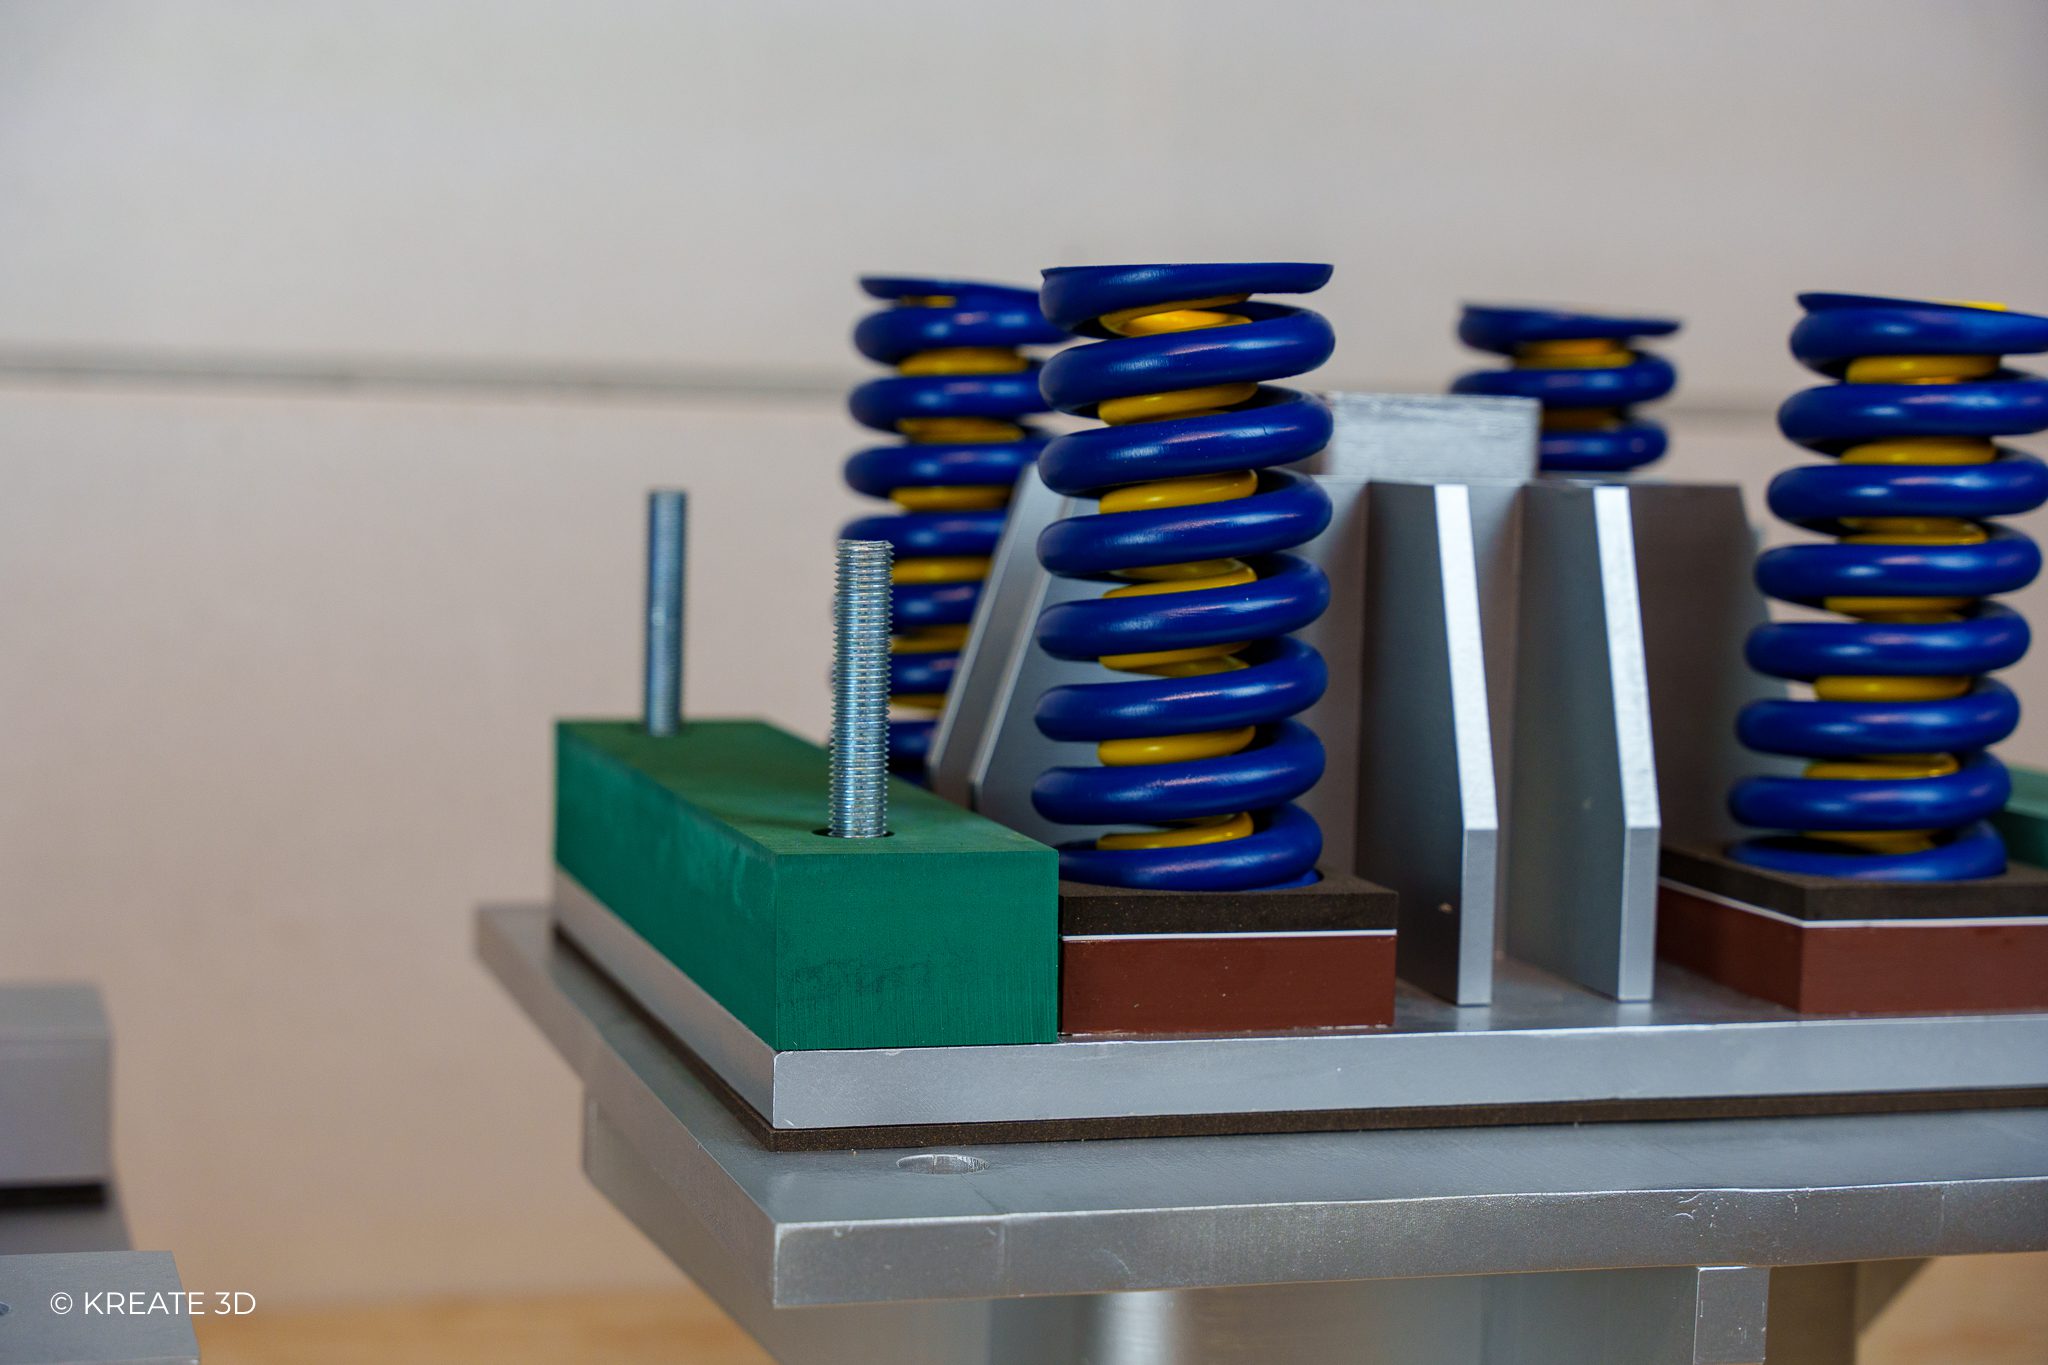 3D printed springs